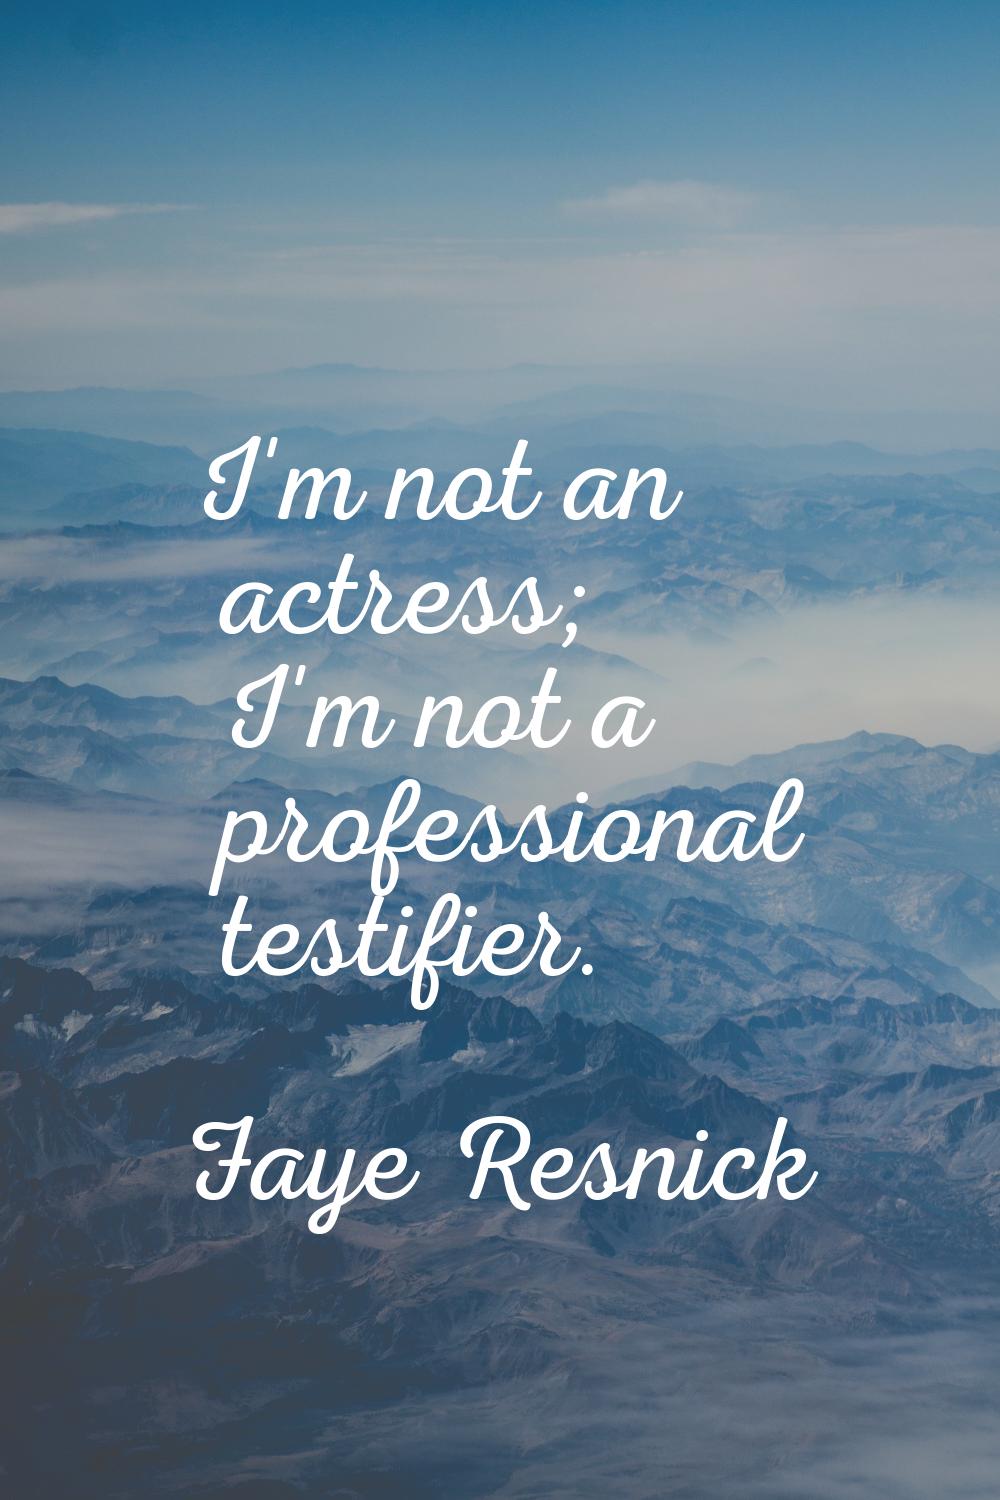 I'm not an actress; I'm not a professional testifier.